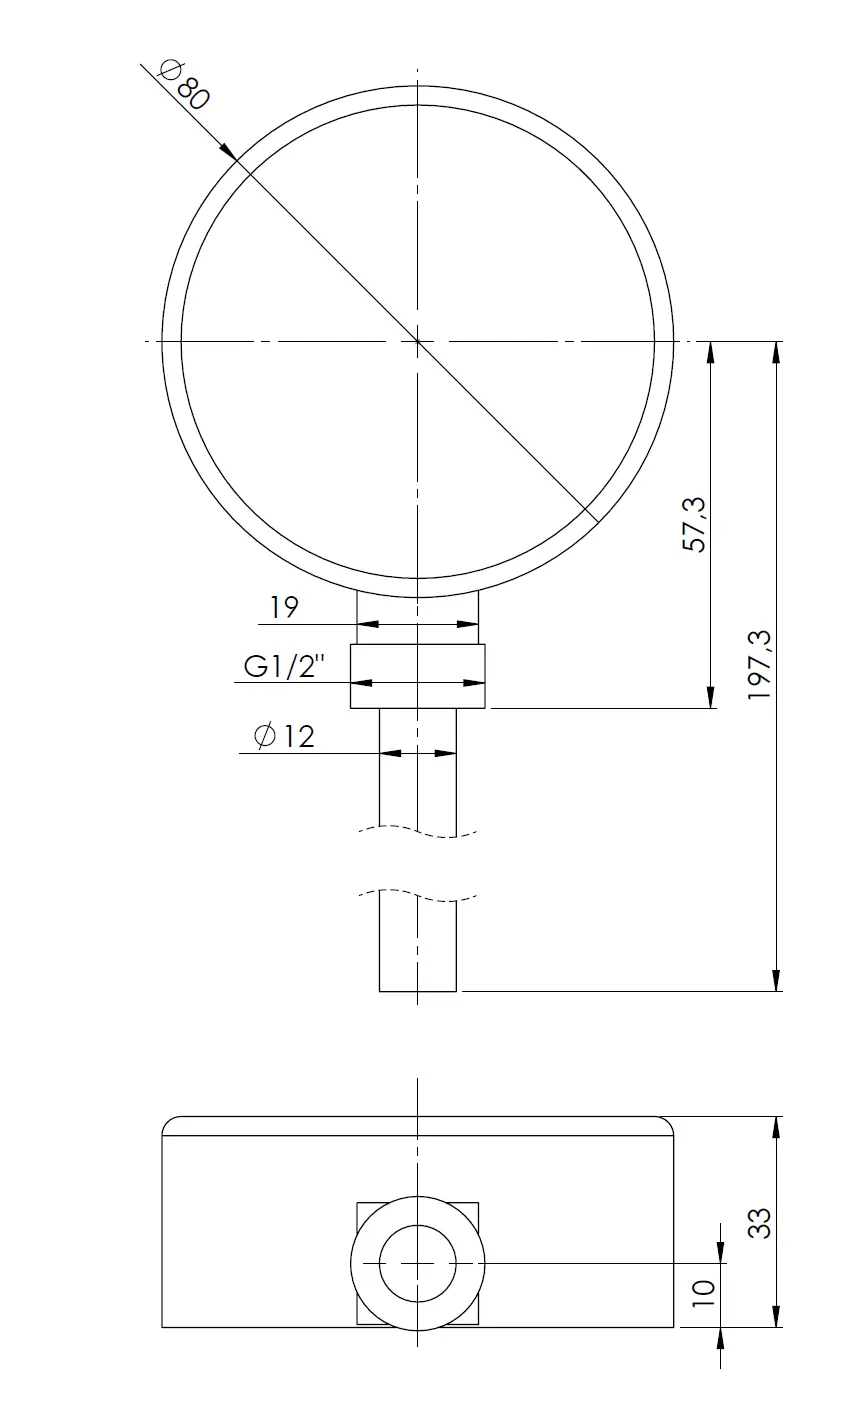 Termometr bimetaliczny BiTh 80, fi80 mm, -20÷60°C, L 150 mm, G1/2", rad, kl. 2 - budowa